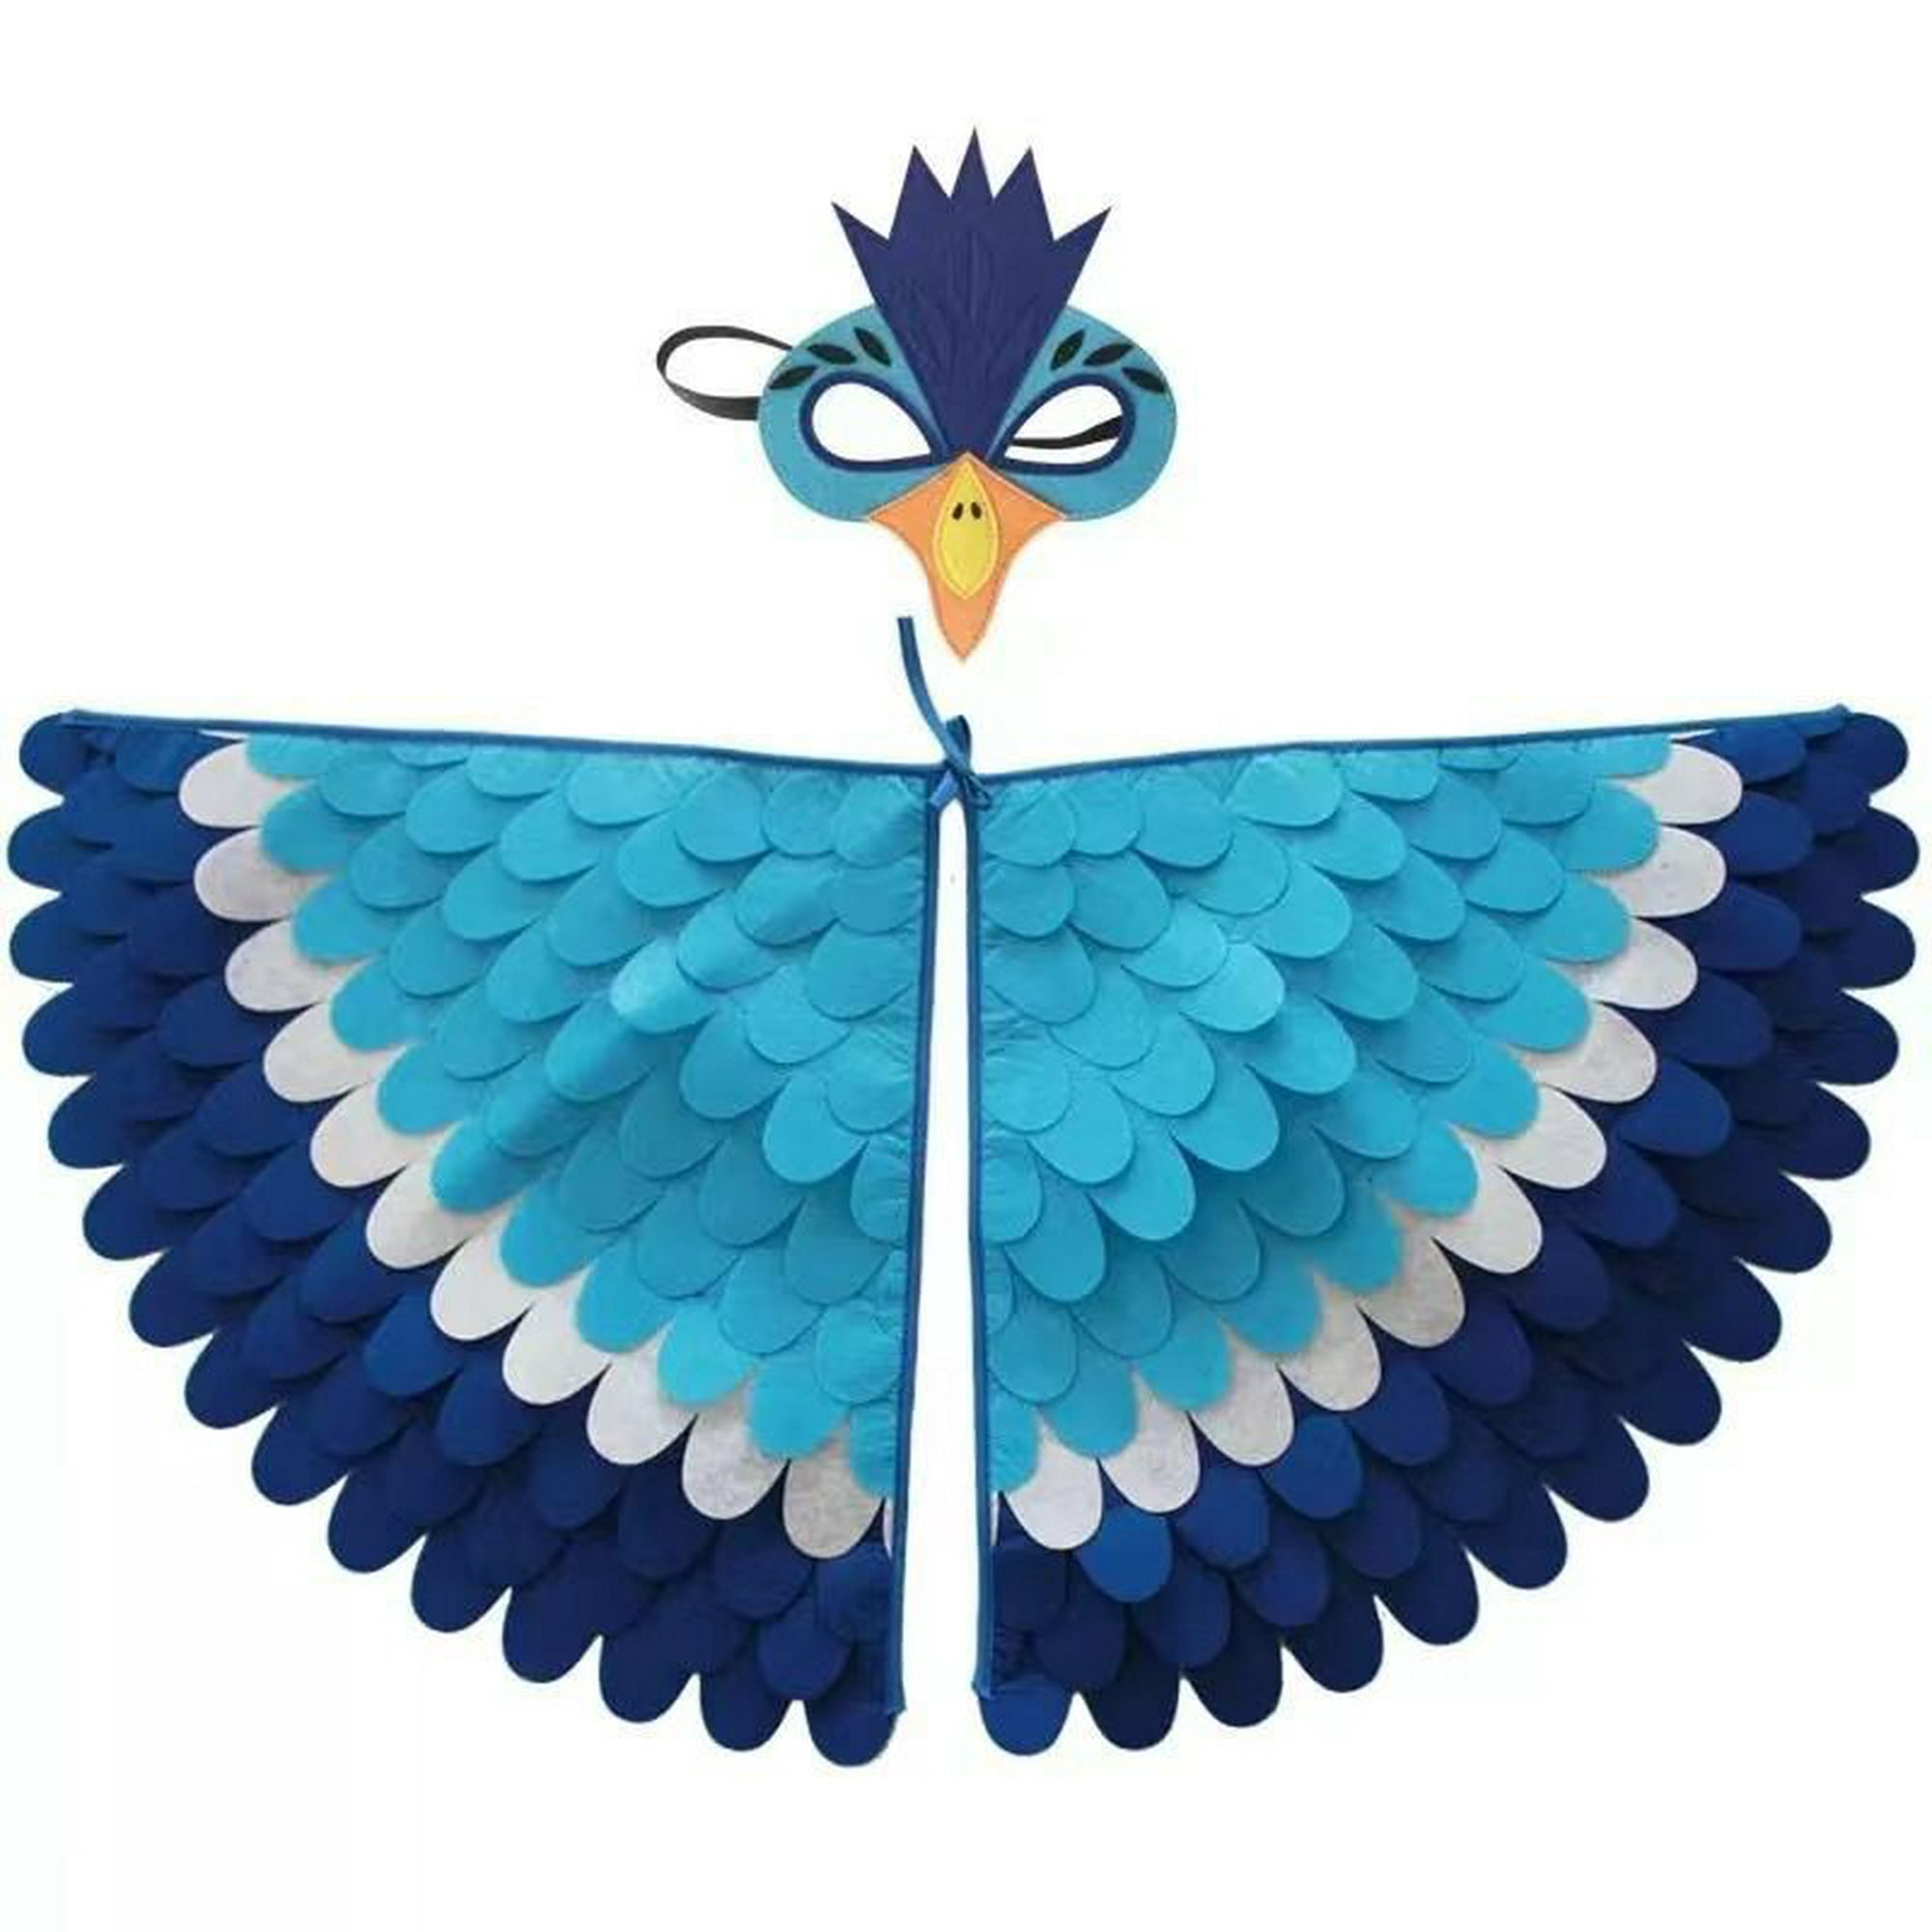 Alas Mariposa Disfraz de Mariposa Niña con Máscara de Fieltro de Mariposa,  alas de Hada alas